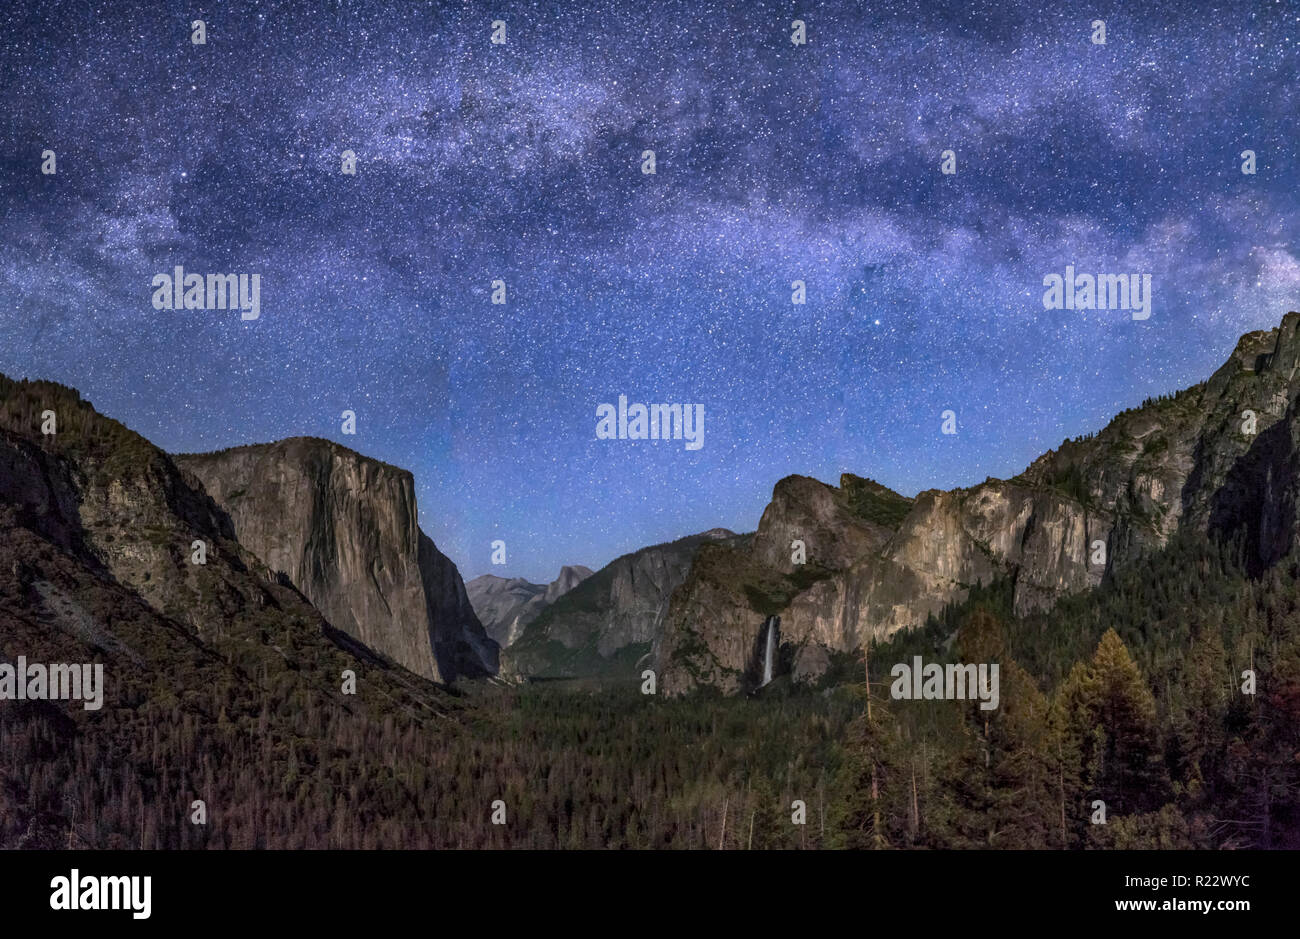 Il parco nazionale di Yosemite Valley, dalla vista di tunnel, è illuminato dalla luna di impostazione con la Via Lattea sopra. Foto Stock